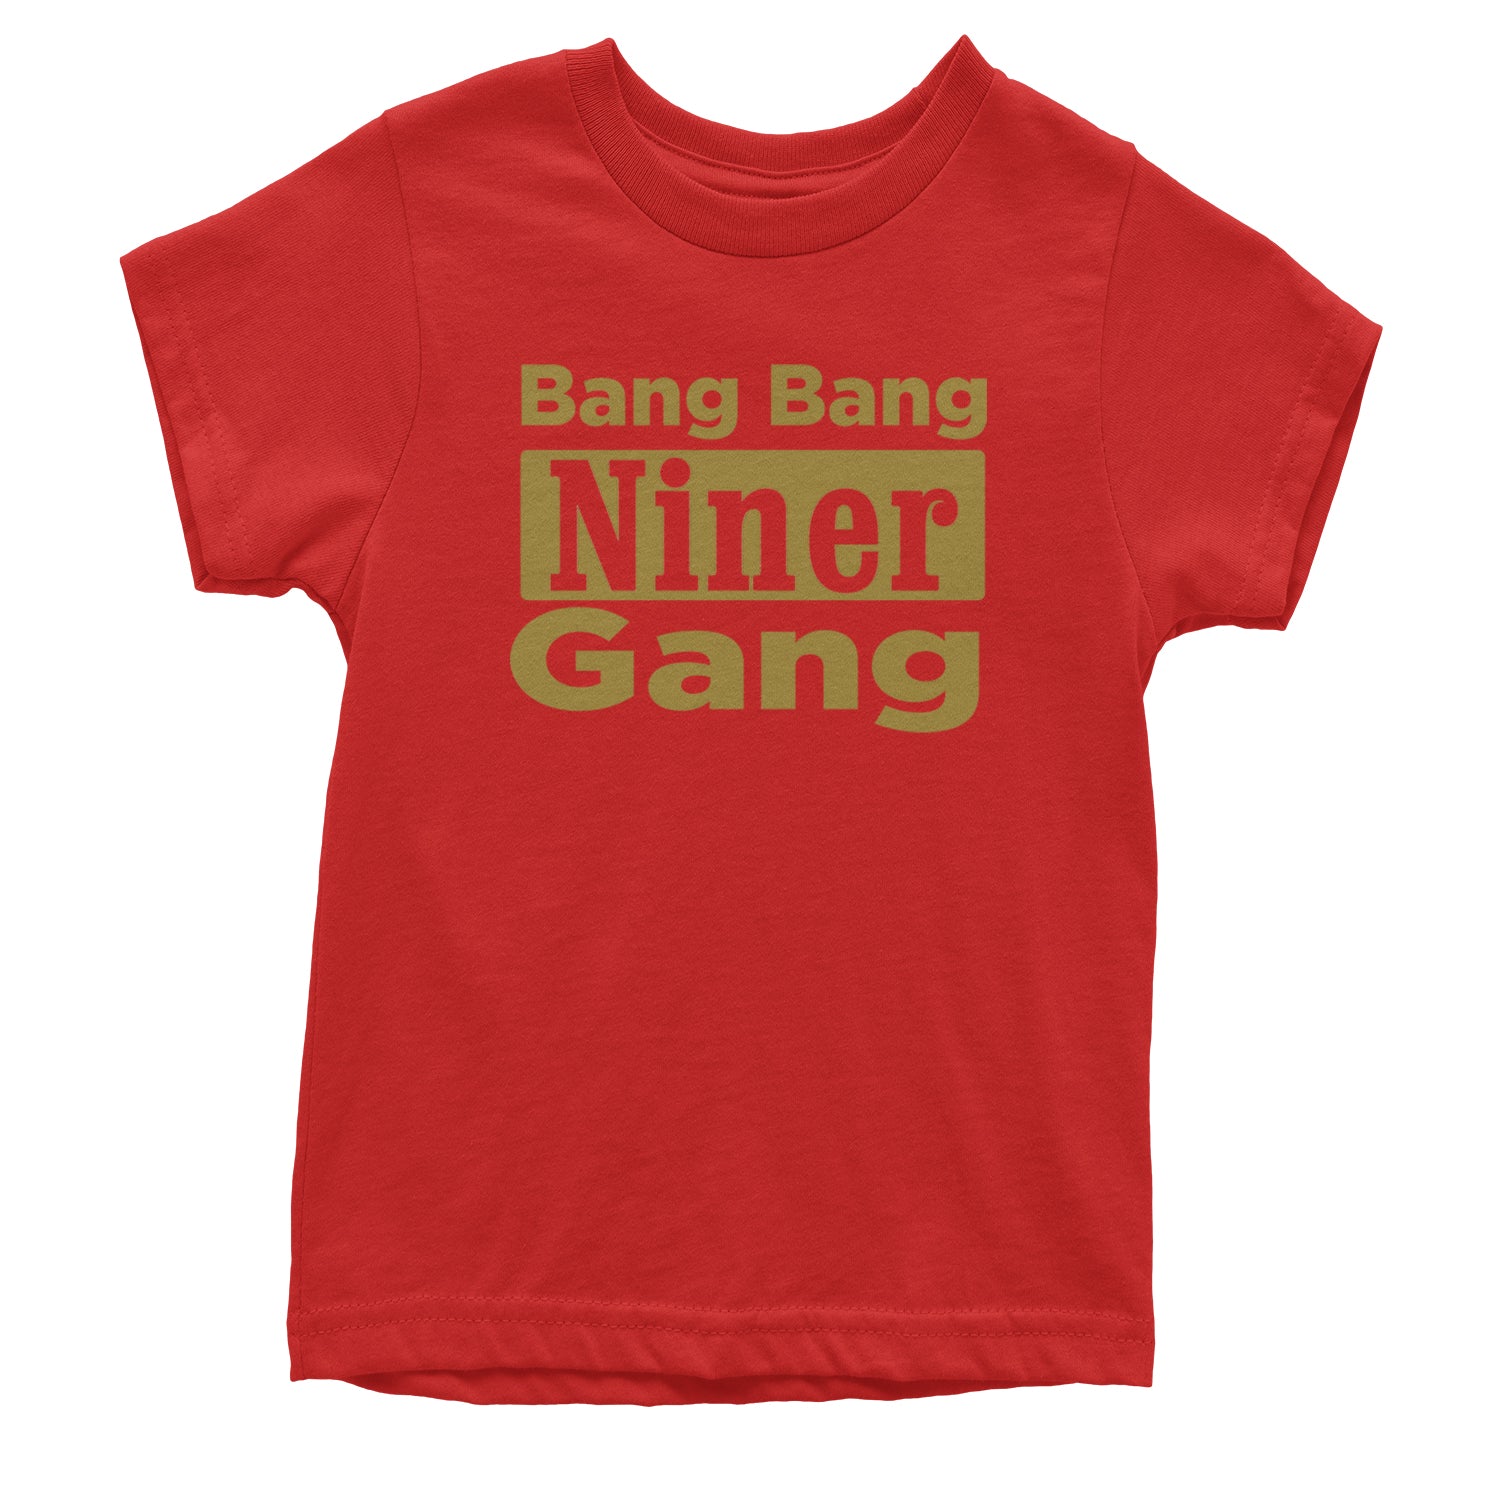 Bang Bang Niner Gang San Francisco Youth T-shirt